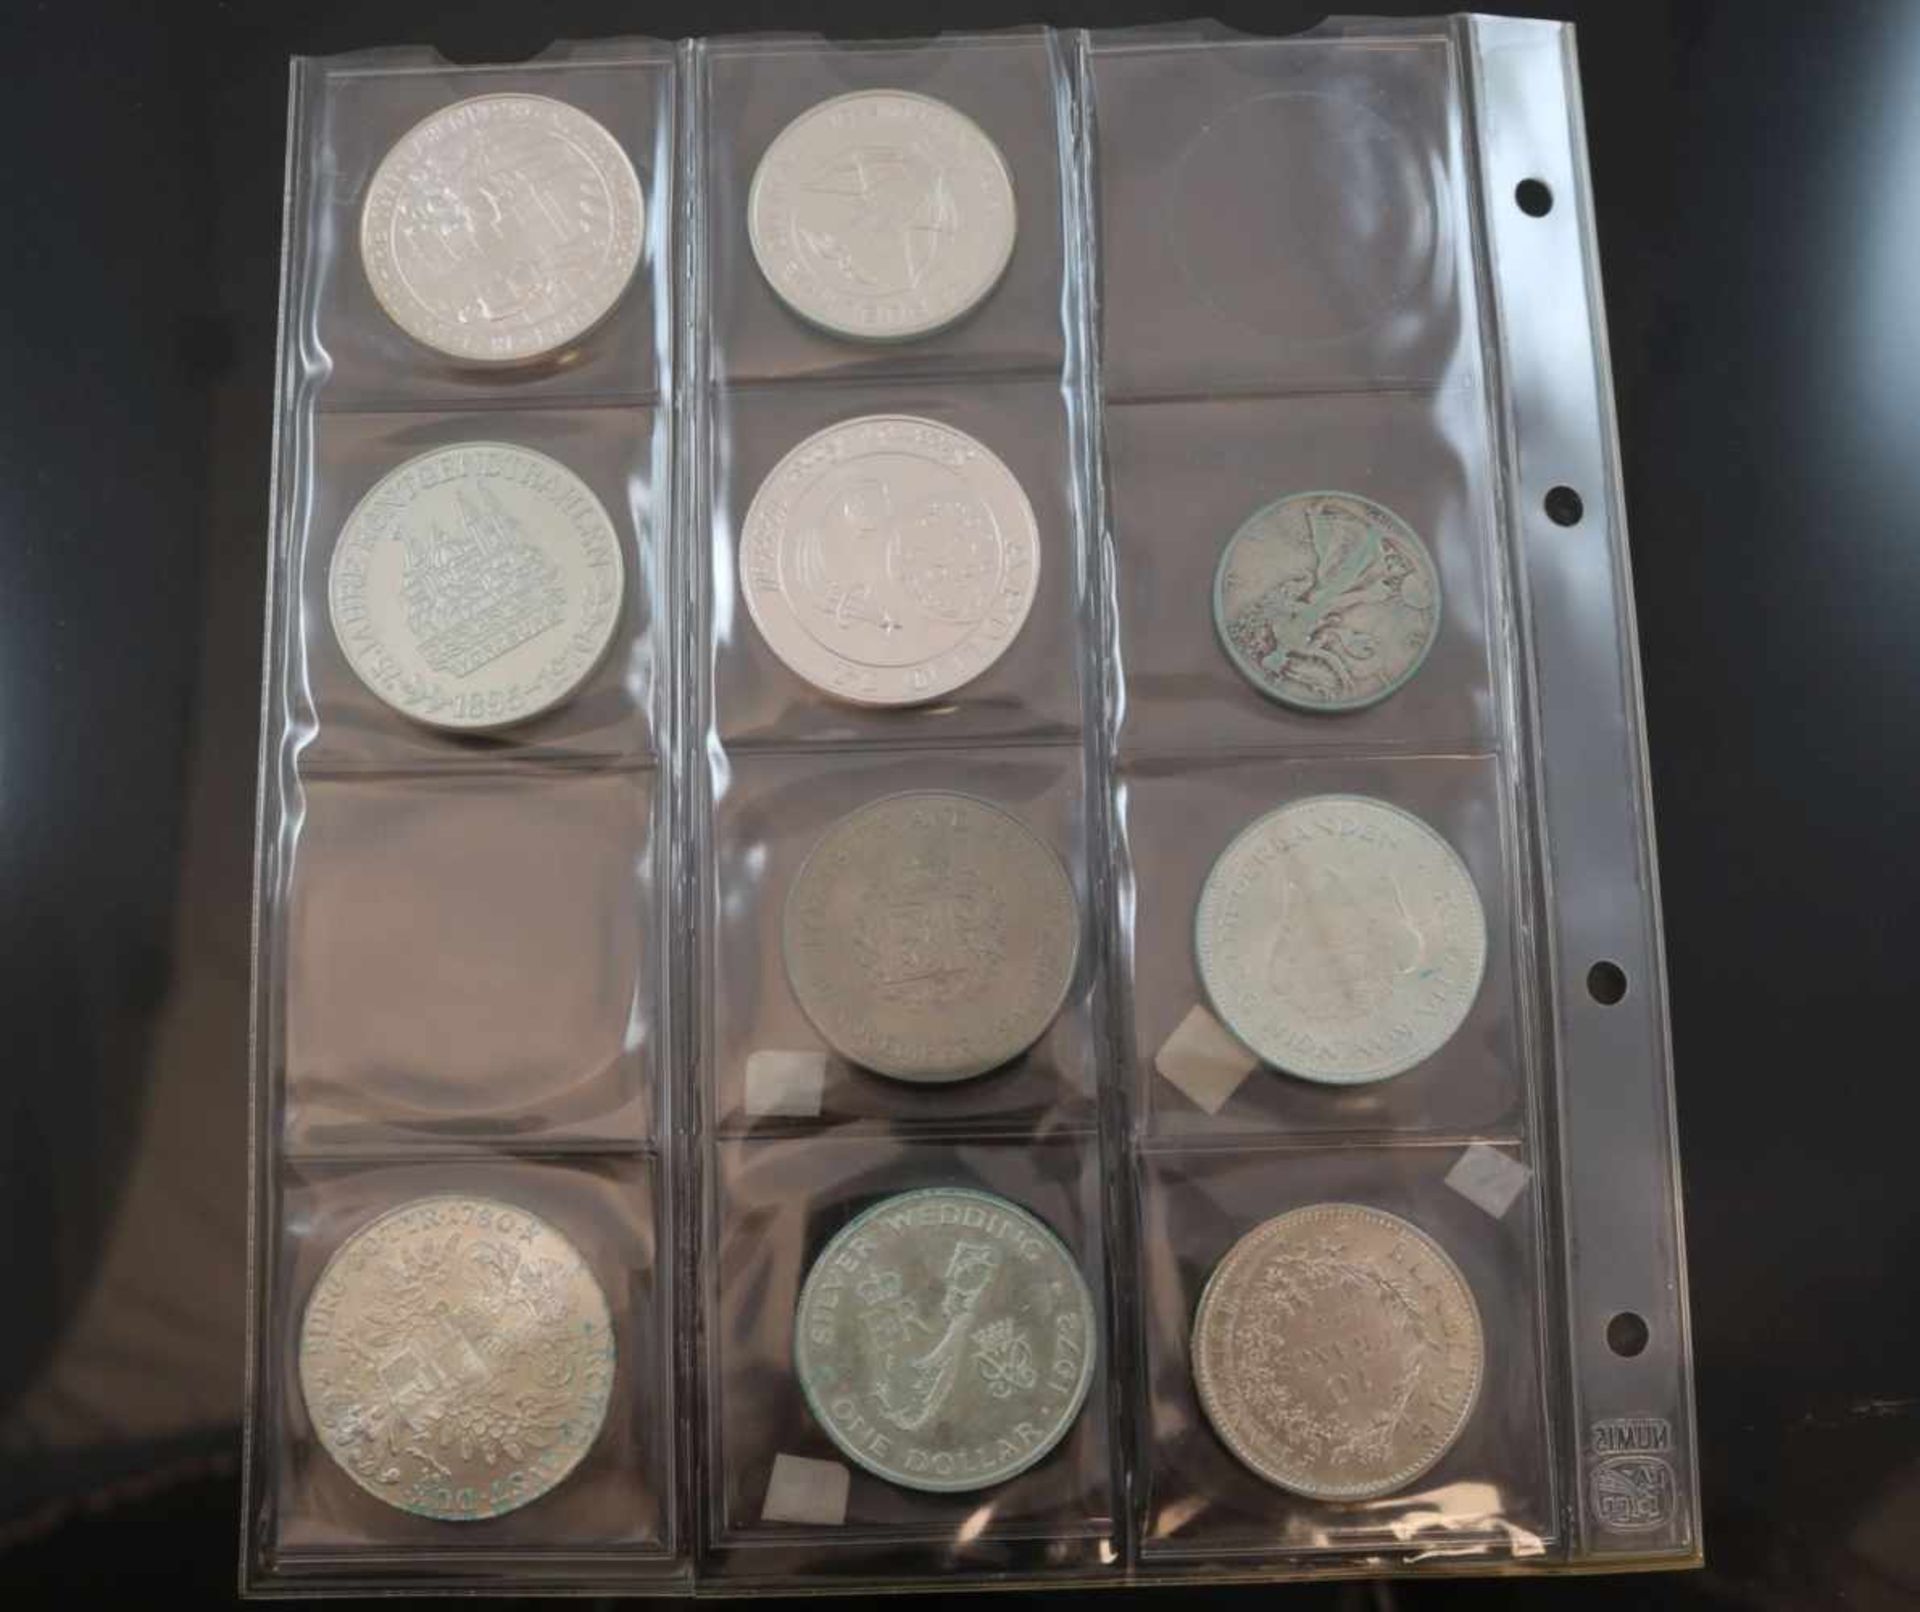 Konvolut Münzen und Medaillen7 Münzen und 3 Medaillen z. T. Silber.- - -25.00 % buyer's premium on - Bild 2 aus 2